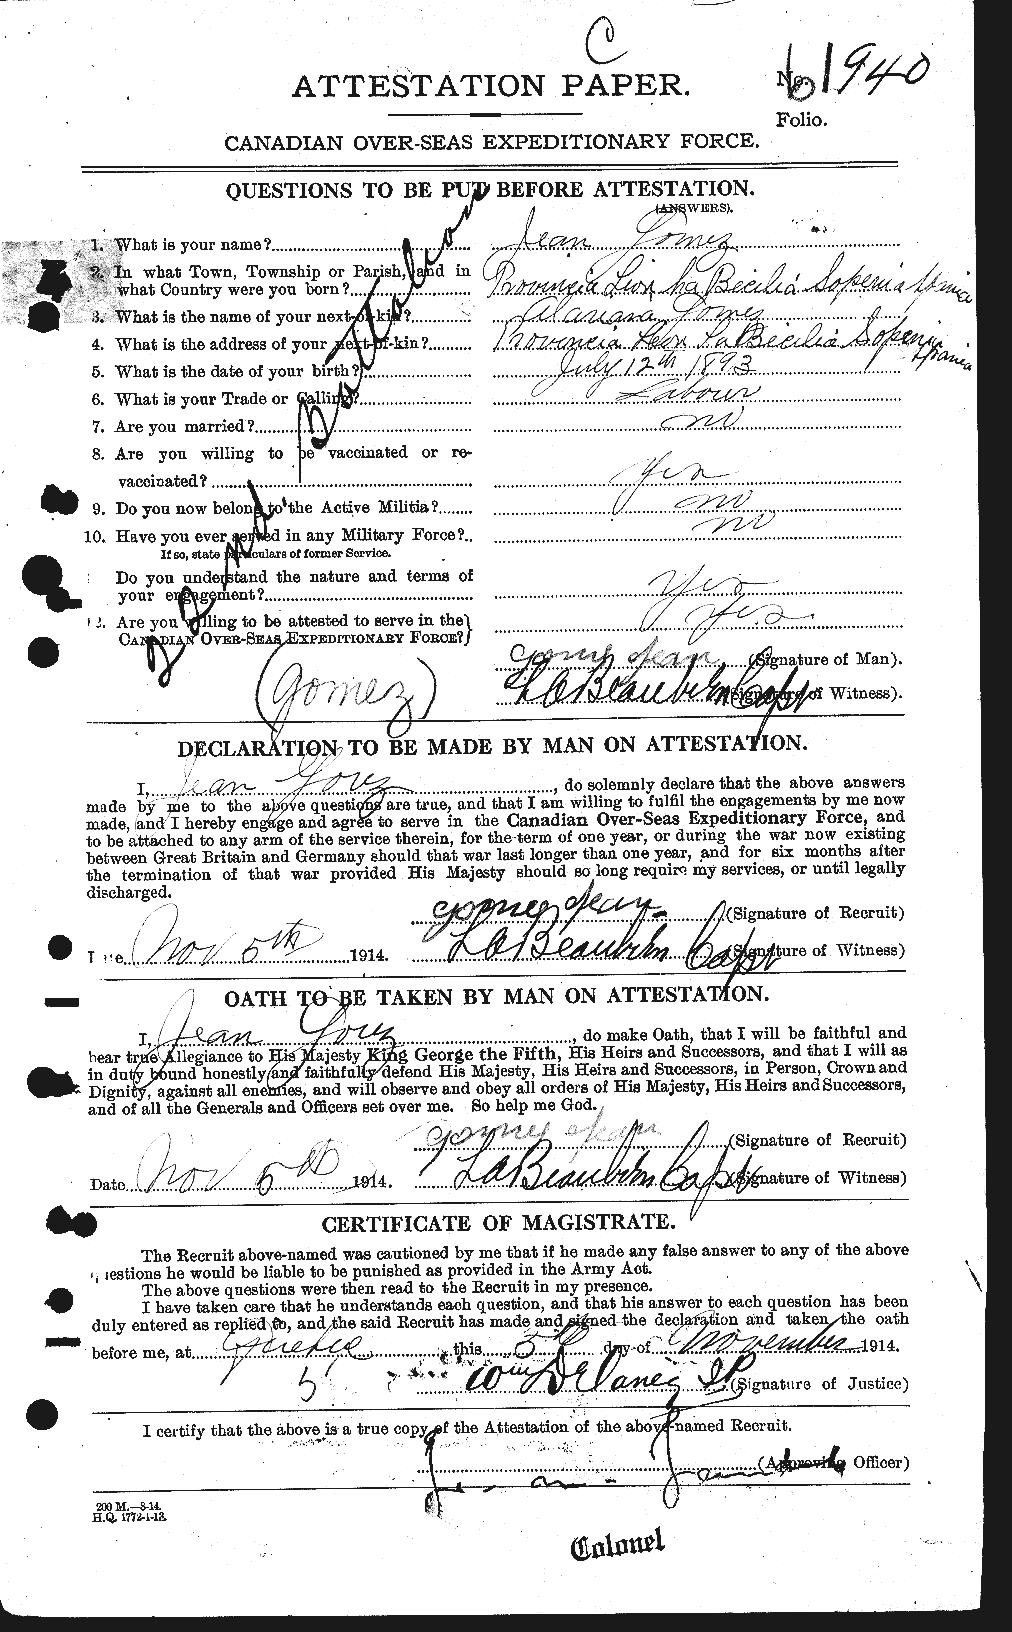 Dossiers du Personnel de la Première Guerre mondiale - CEC 354840a